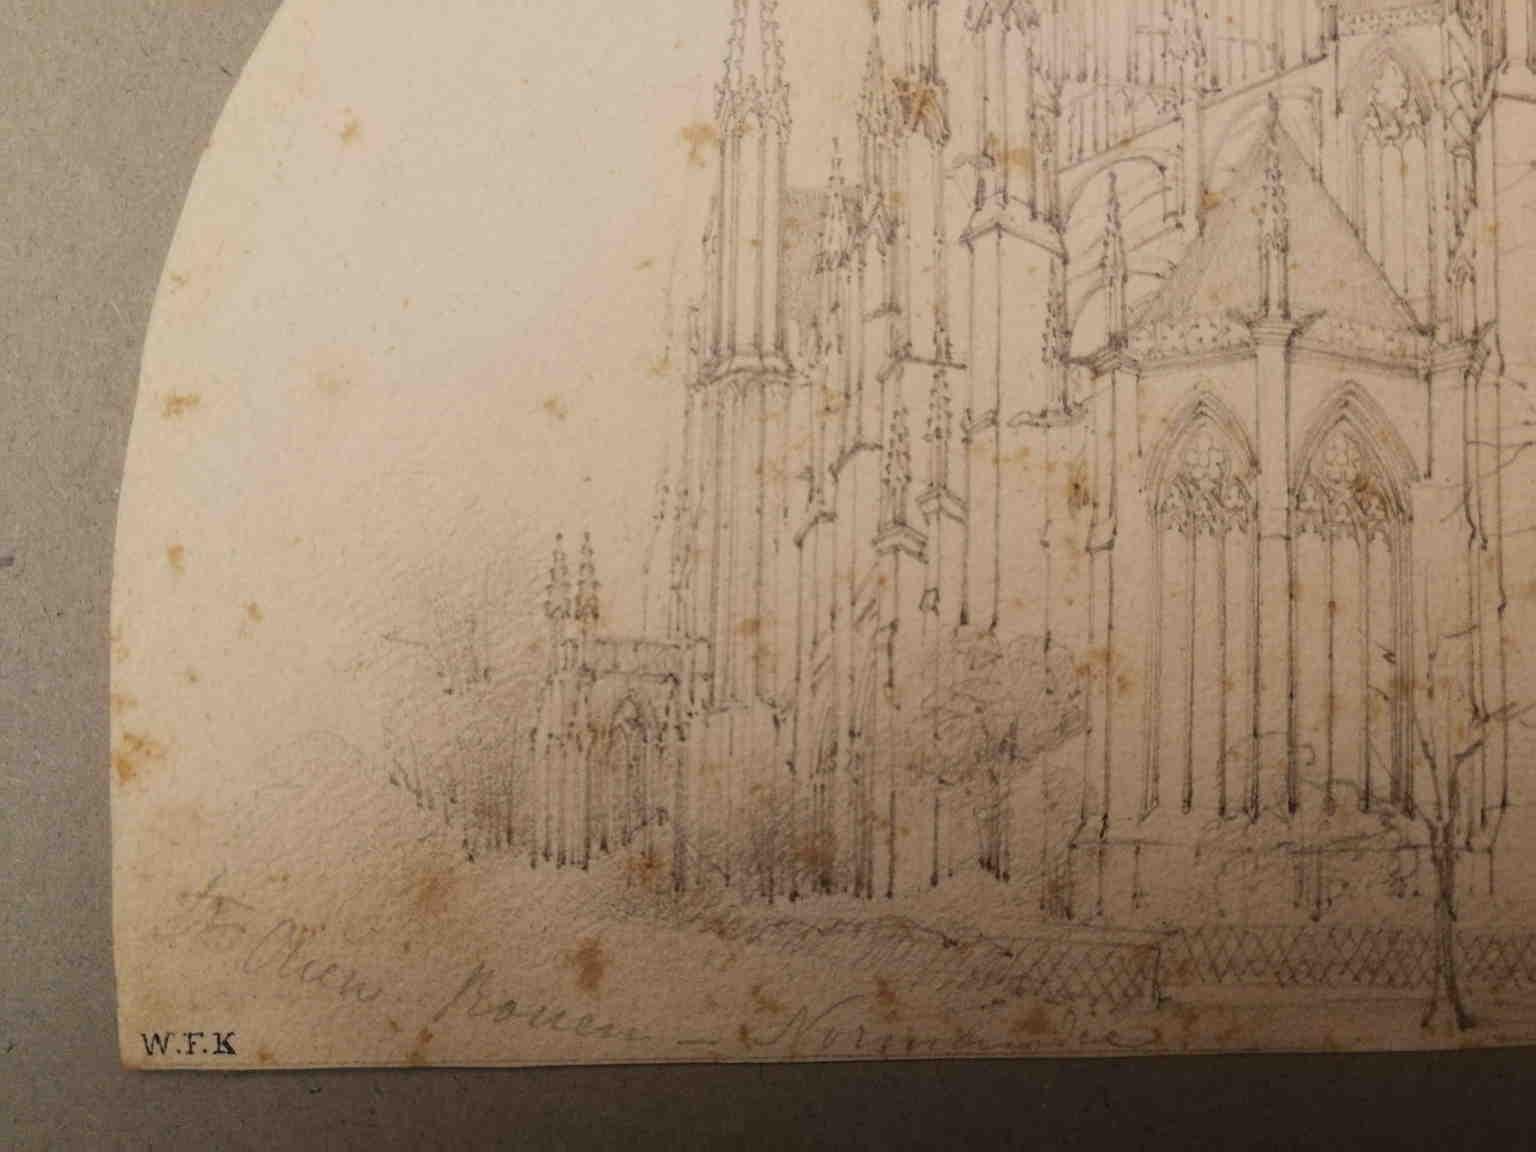 Ce petit dessin en forme de lunette (crayon sur papier, 13 x 19 cm) représente l'abbaye de Saint-Ouen à Rouen, en Normandie, comme il est indiqué au crayon dans le coin inférieur gauche.
On peut supposer qu'il s'agit d'une étude réelle par